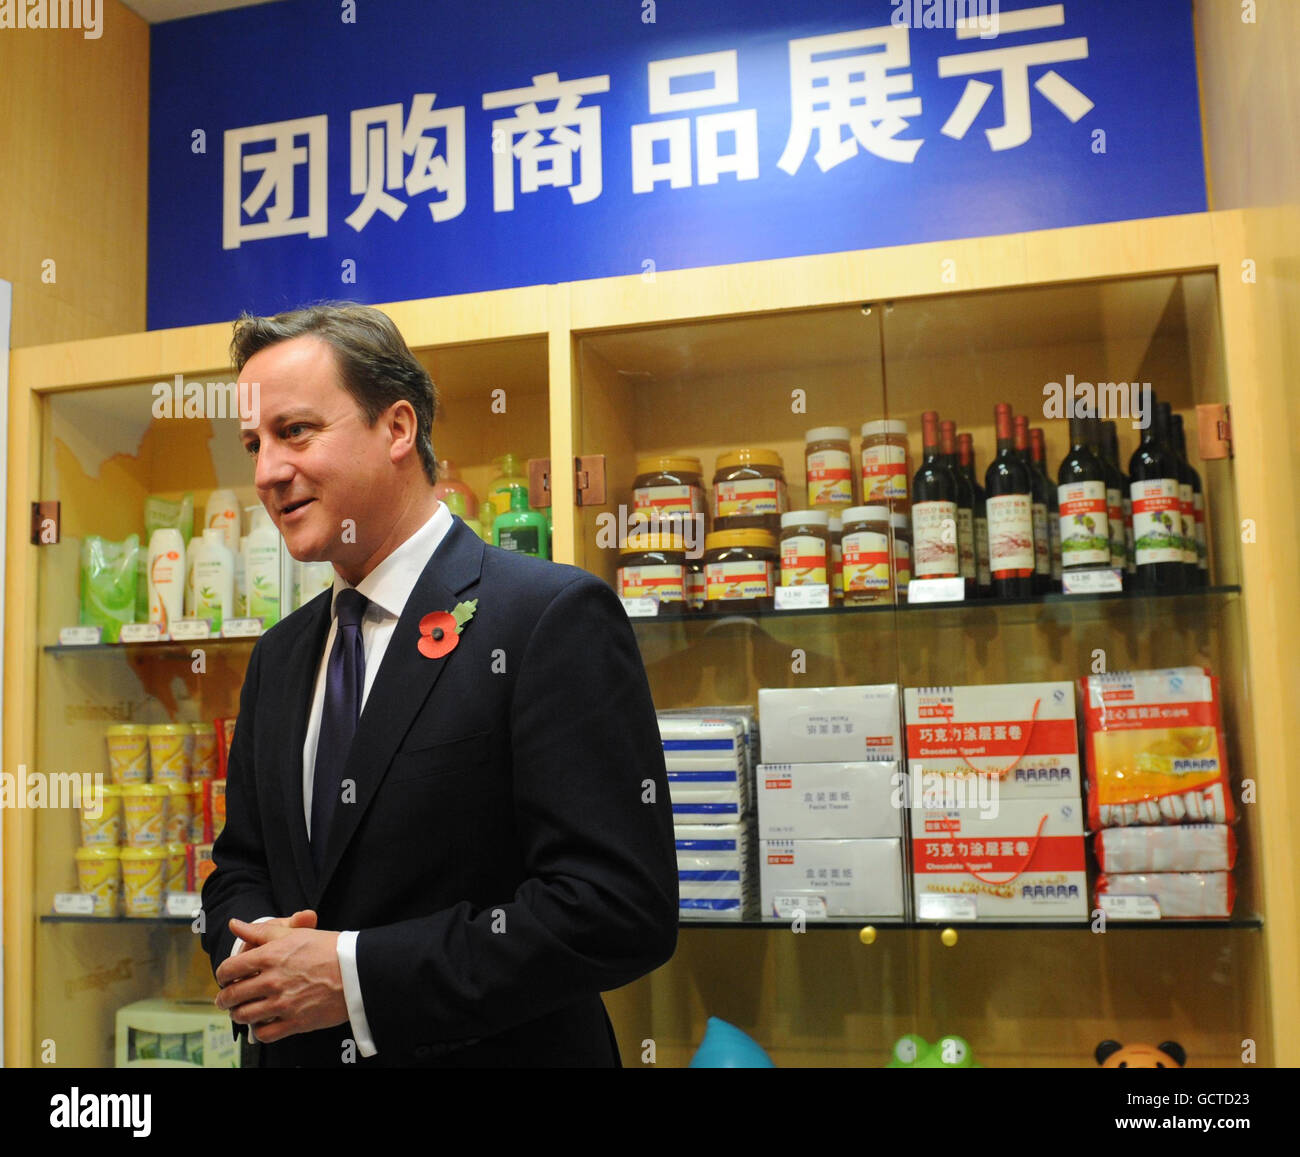 Le premier jour de sa visite en Chine, le Premier ministre britannique David Cameron se rend aujourd’hui dans un supermarché Tesco, accompagné d’une délégation de 50 entreprises britanniques de premier plan. Banque D'Images